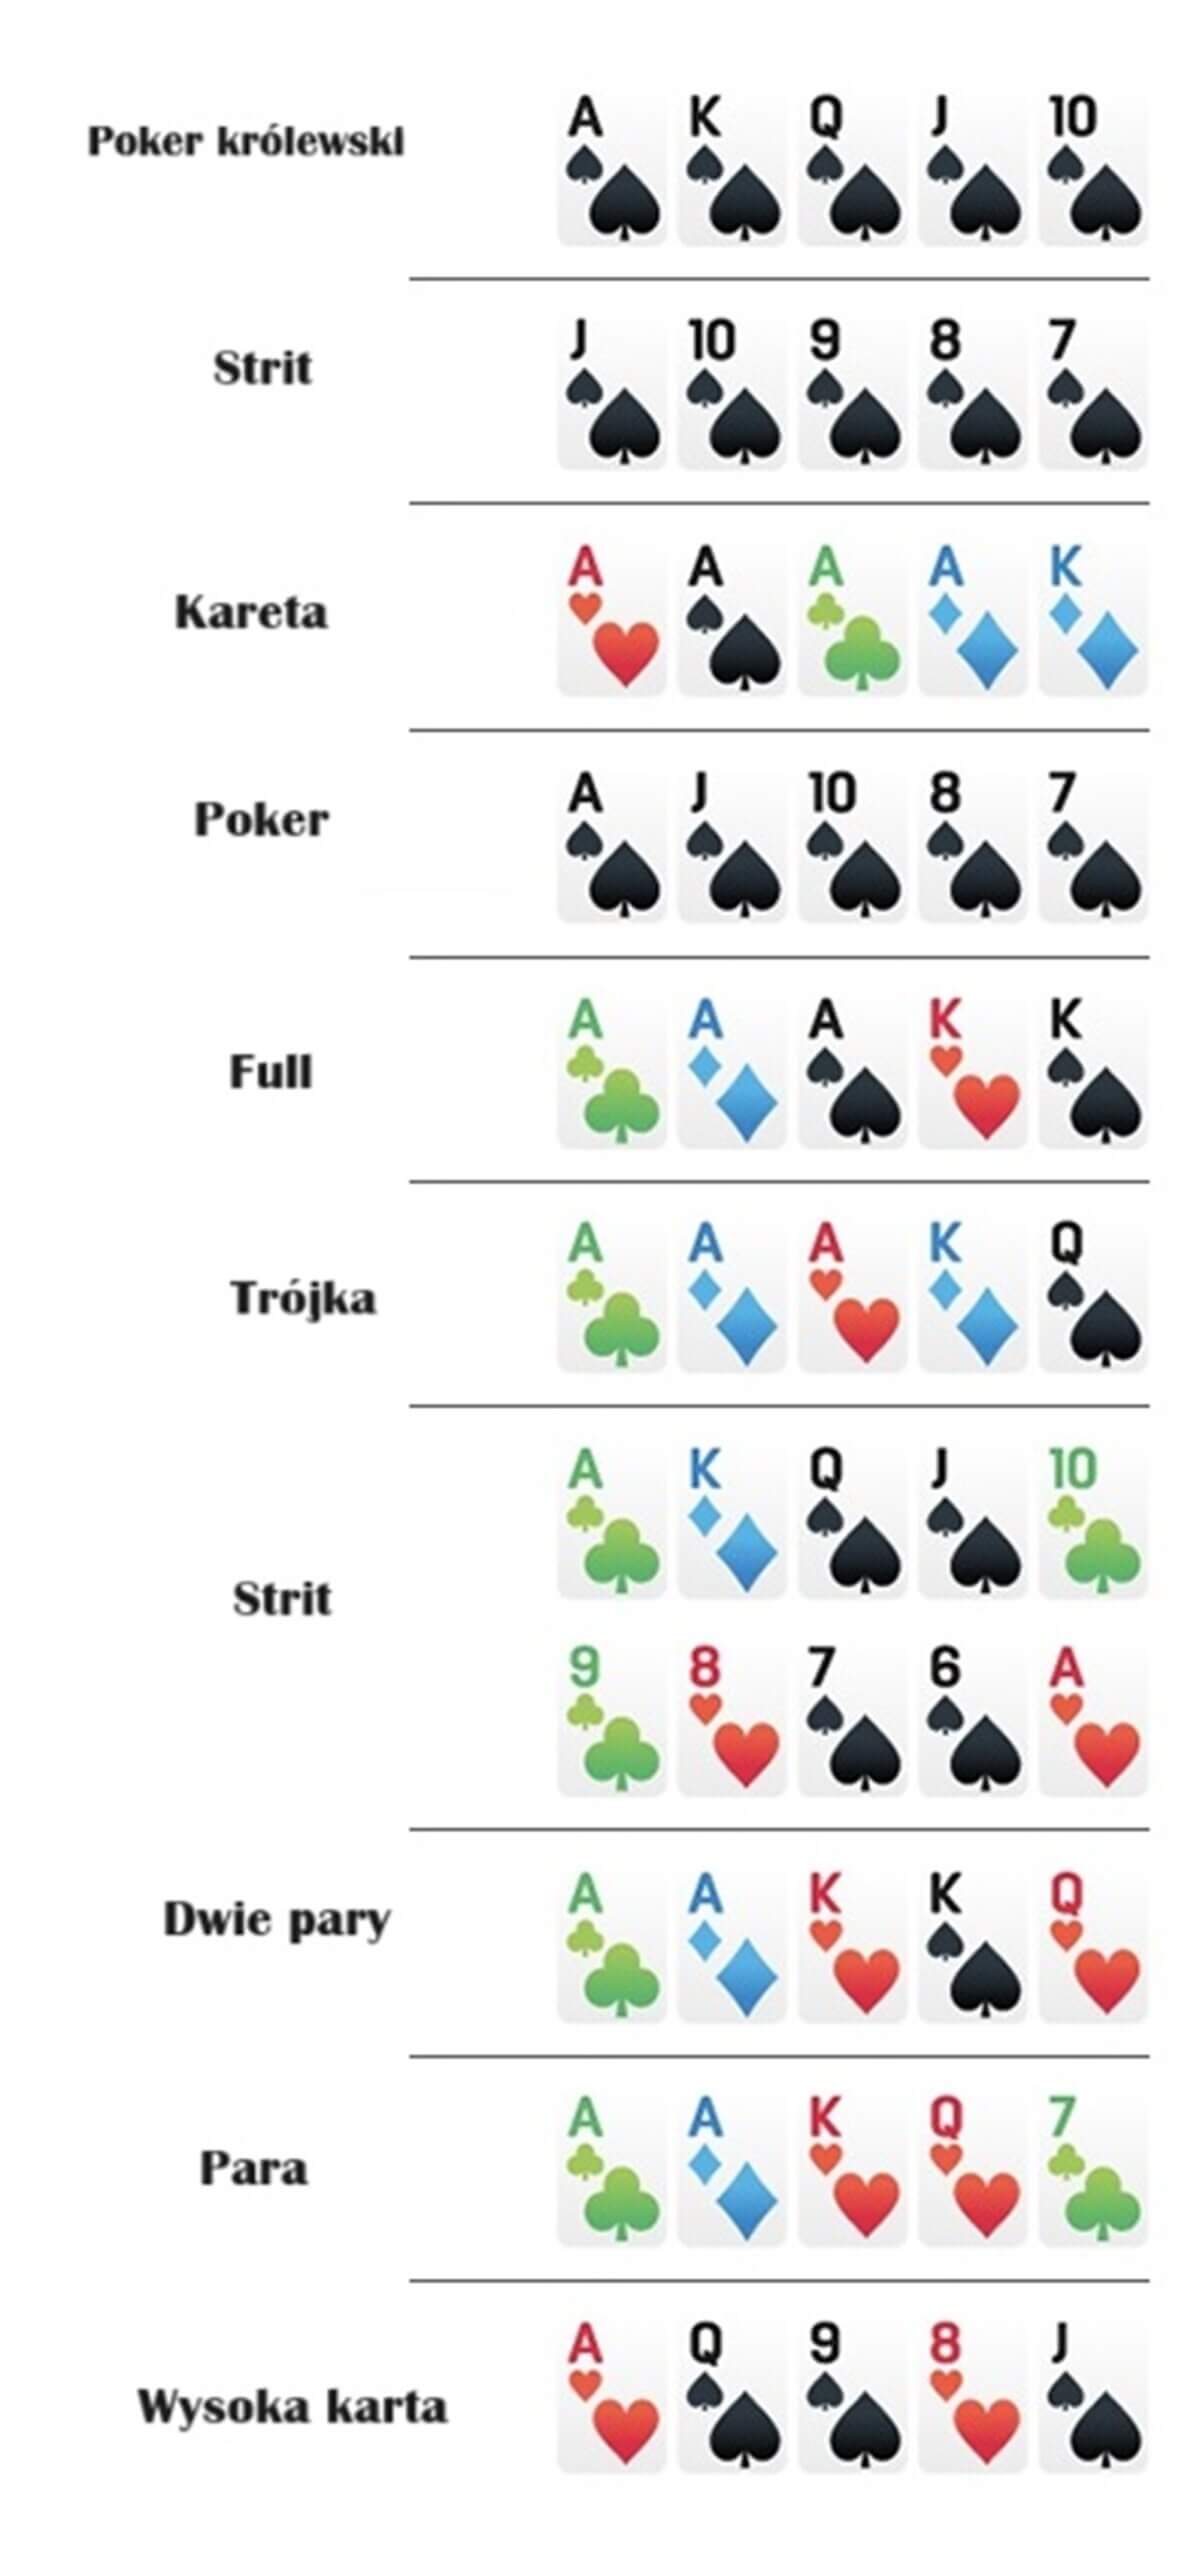 Układy kart w pokerze